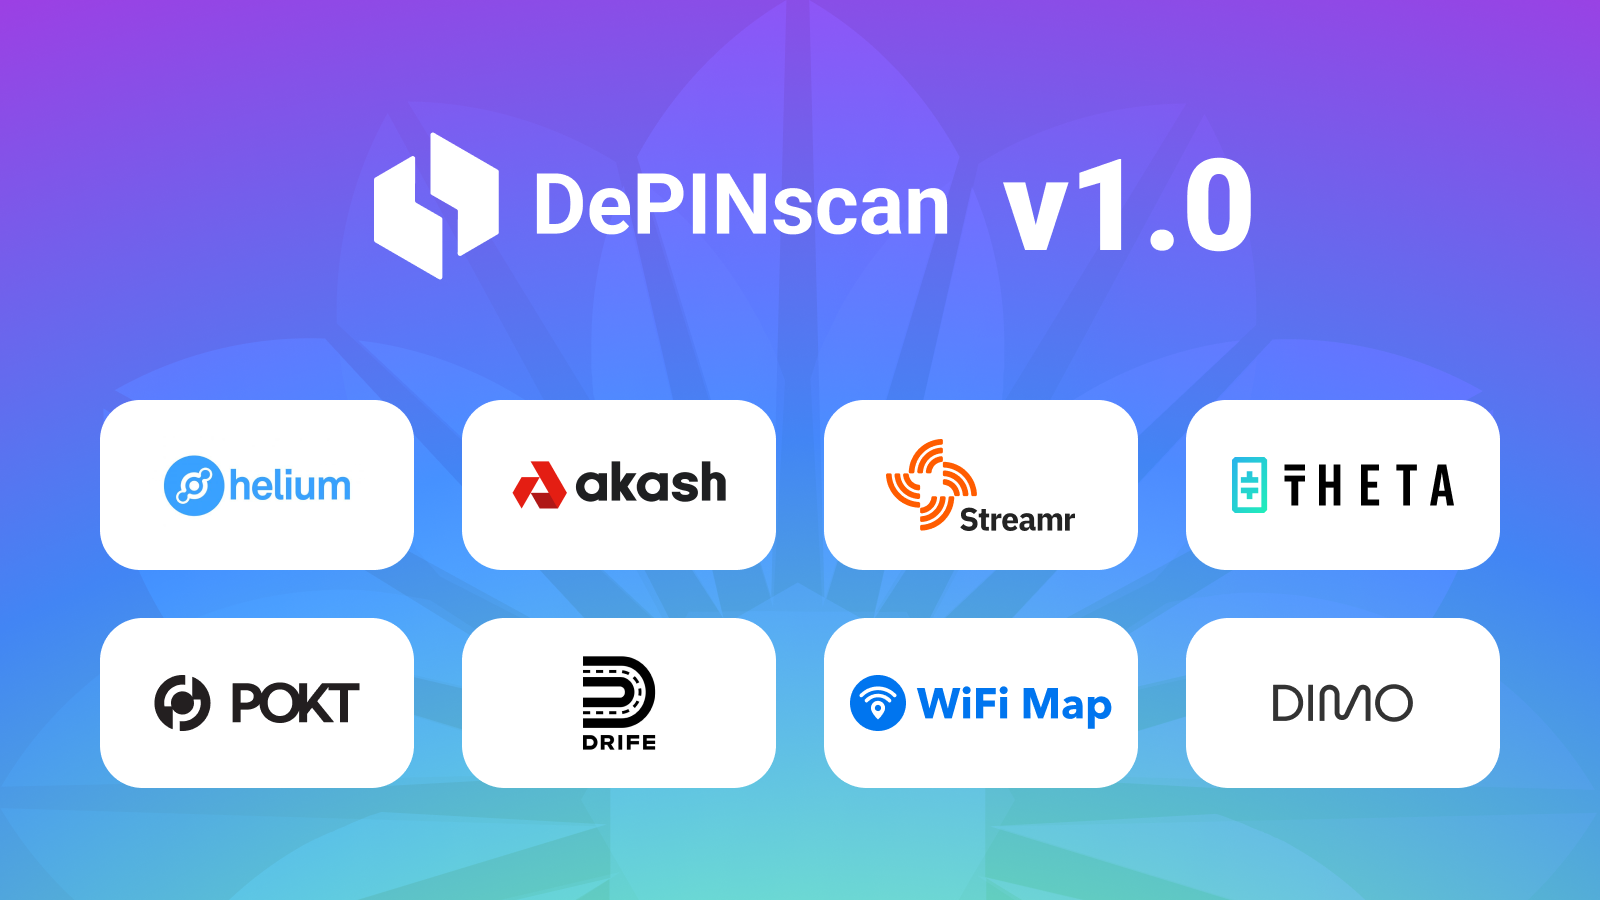 depinscan-v1-0-launch